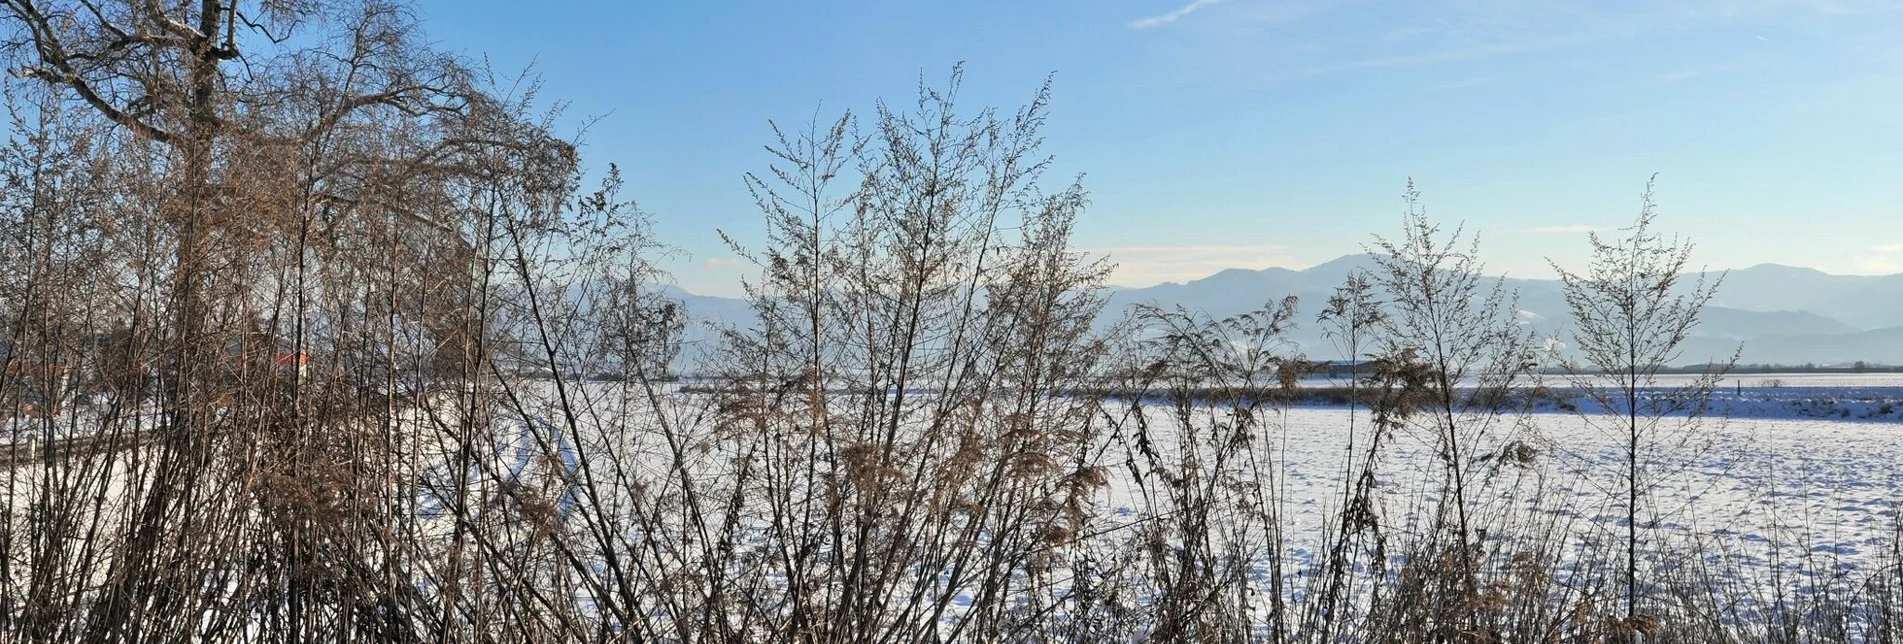 Winterwandern Natur Historien Lehrpfad im Winter - Touren-Impression #1 | © Erlebnisregion Murtal